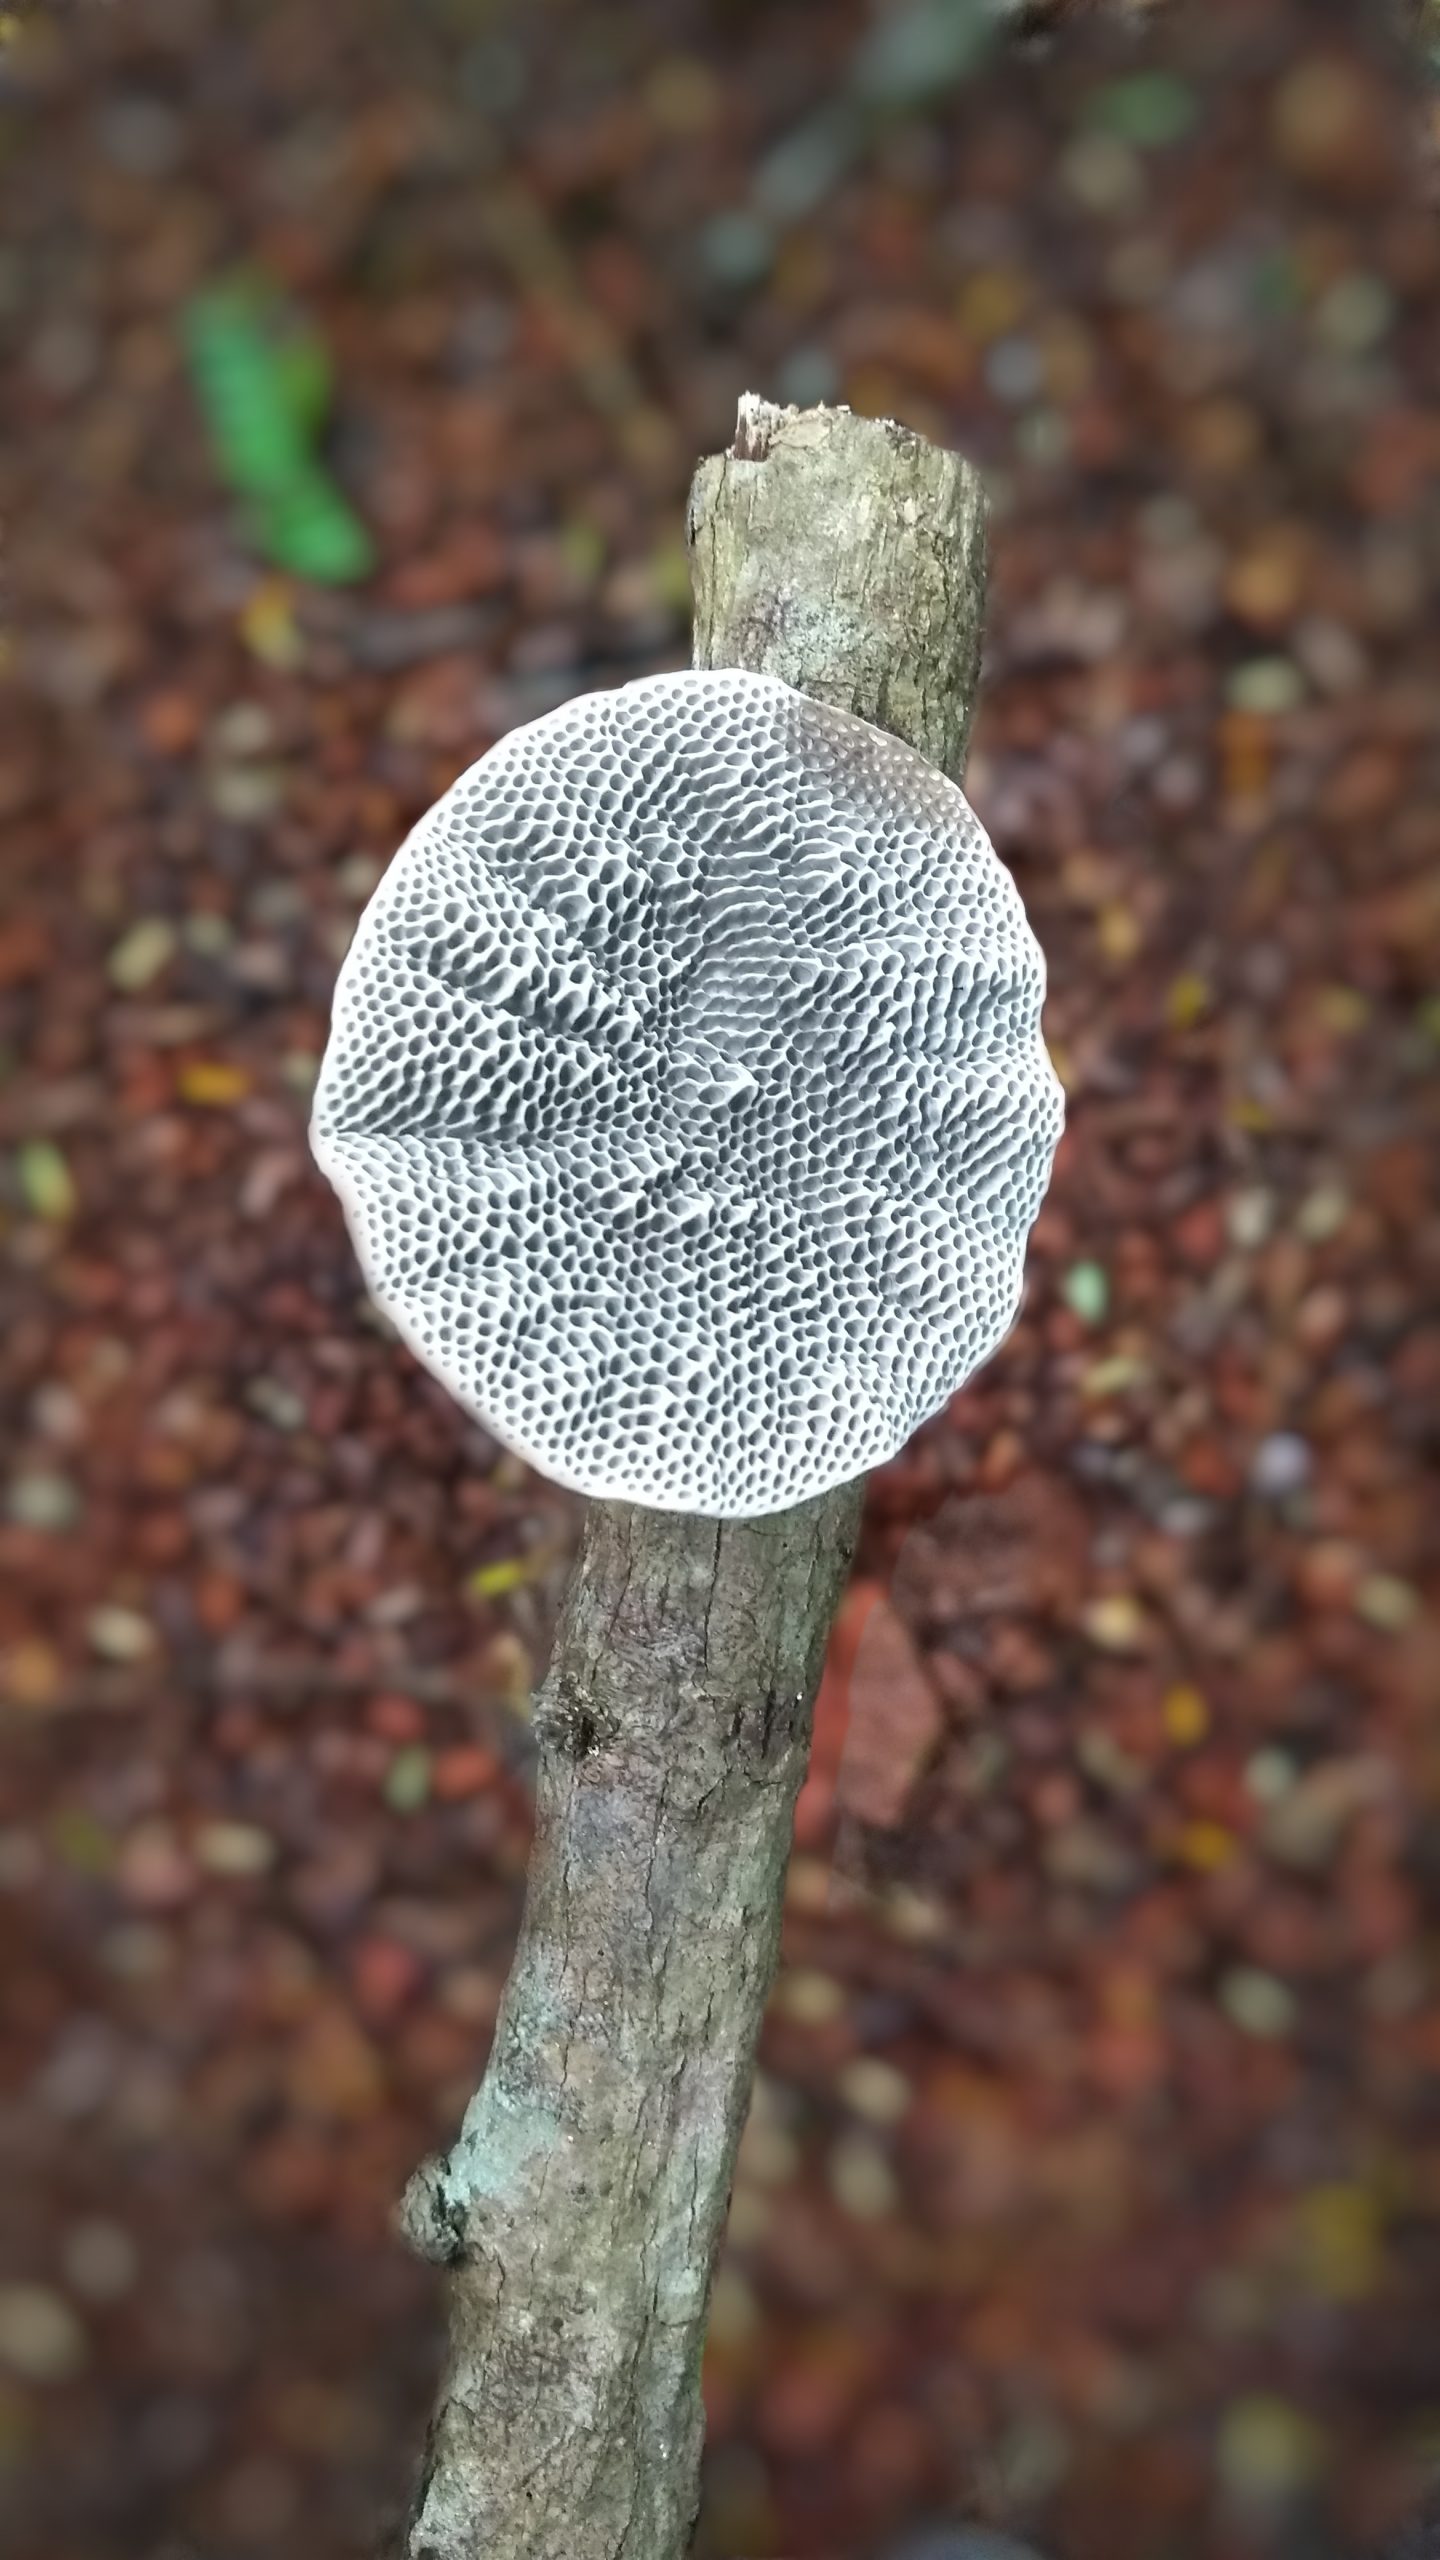 Fungus on a twig